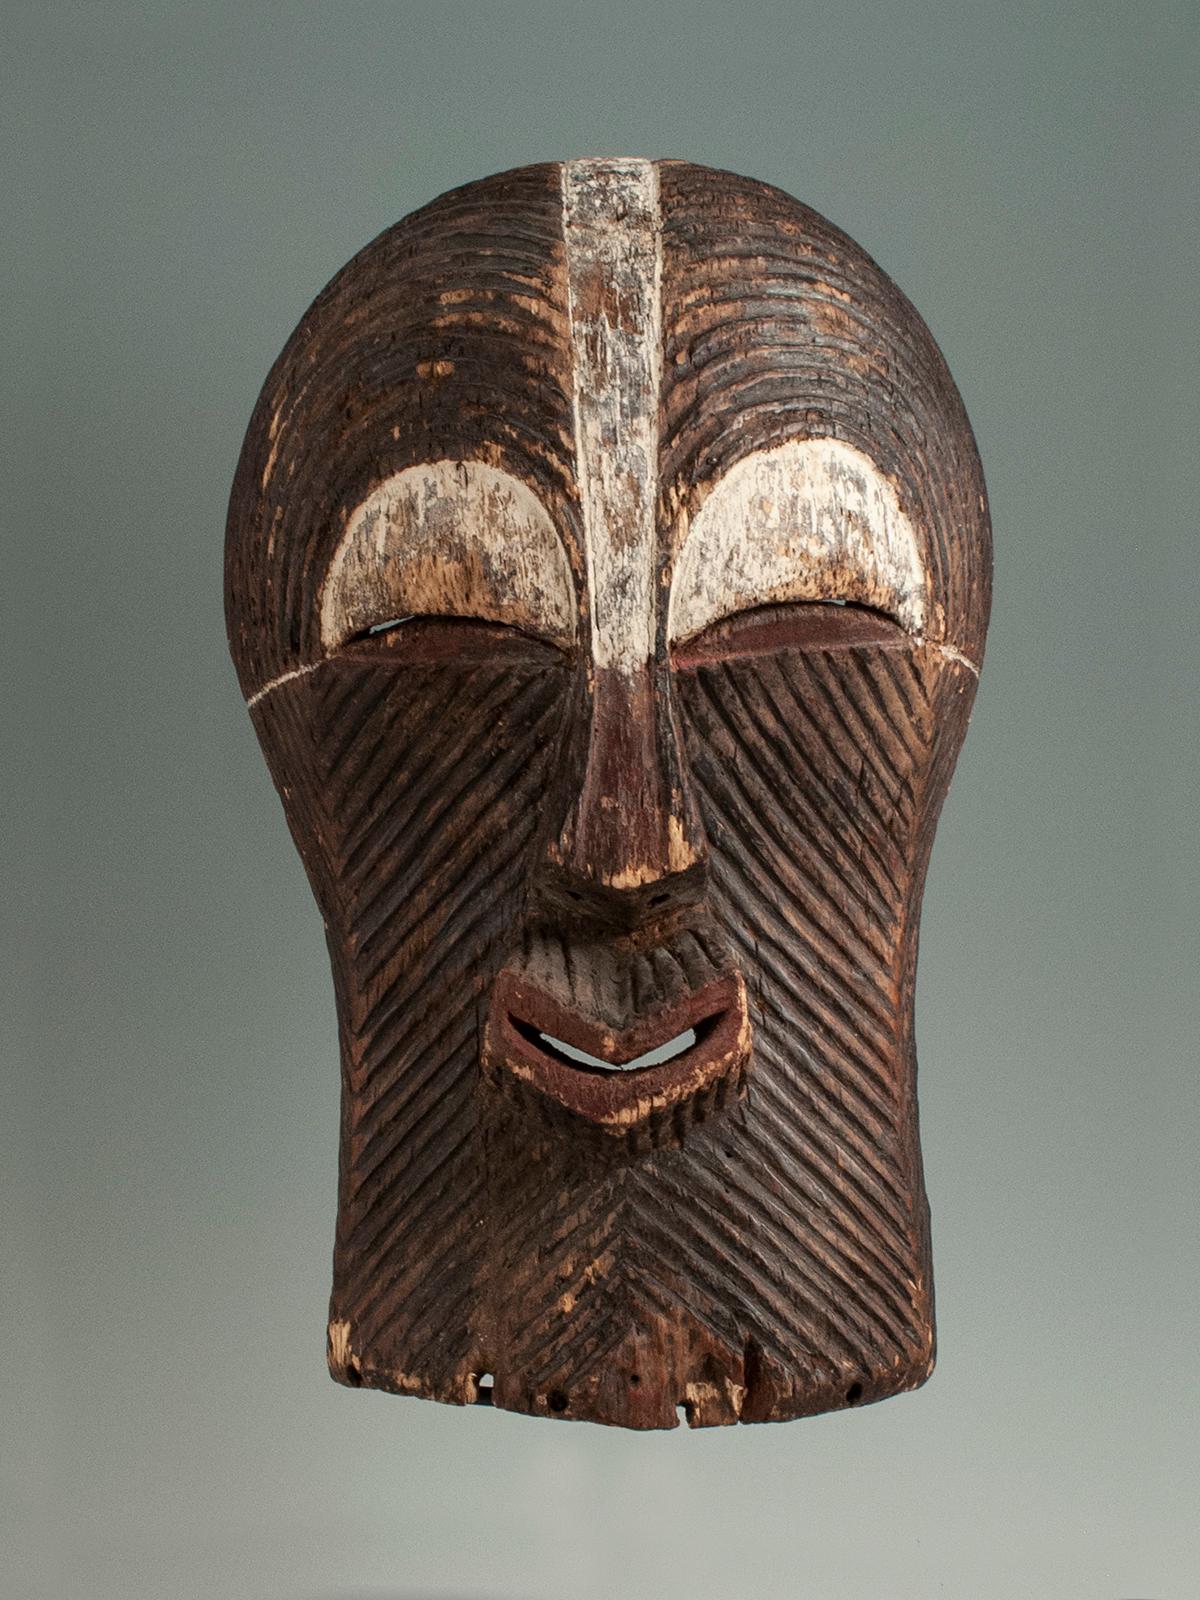 Ce masque graphique Songye Kifwebe présente de fines lignes sculptées courbées au-dessus des yeux et des lignes diagonales rayonnant à partir du nez et de la bouche dans la forme classique des Kifwebe. Masque du milieu du 20e siècle provenant de la